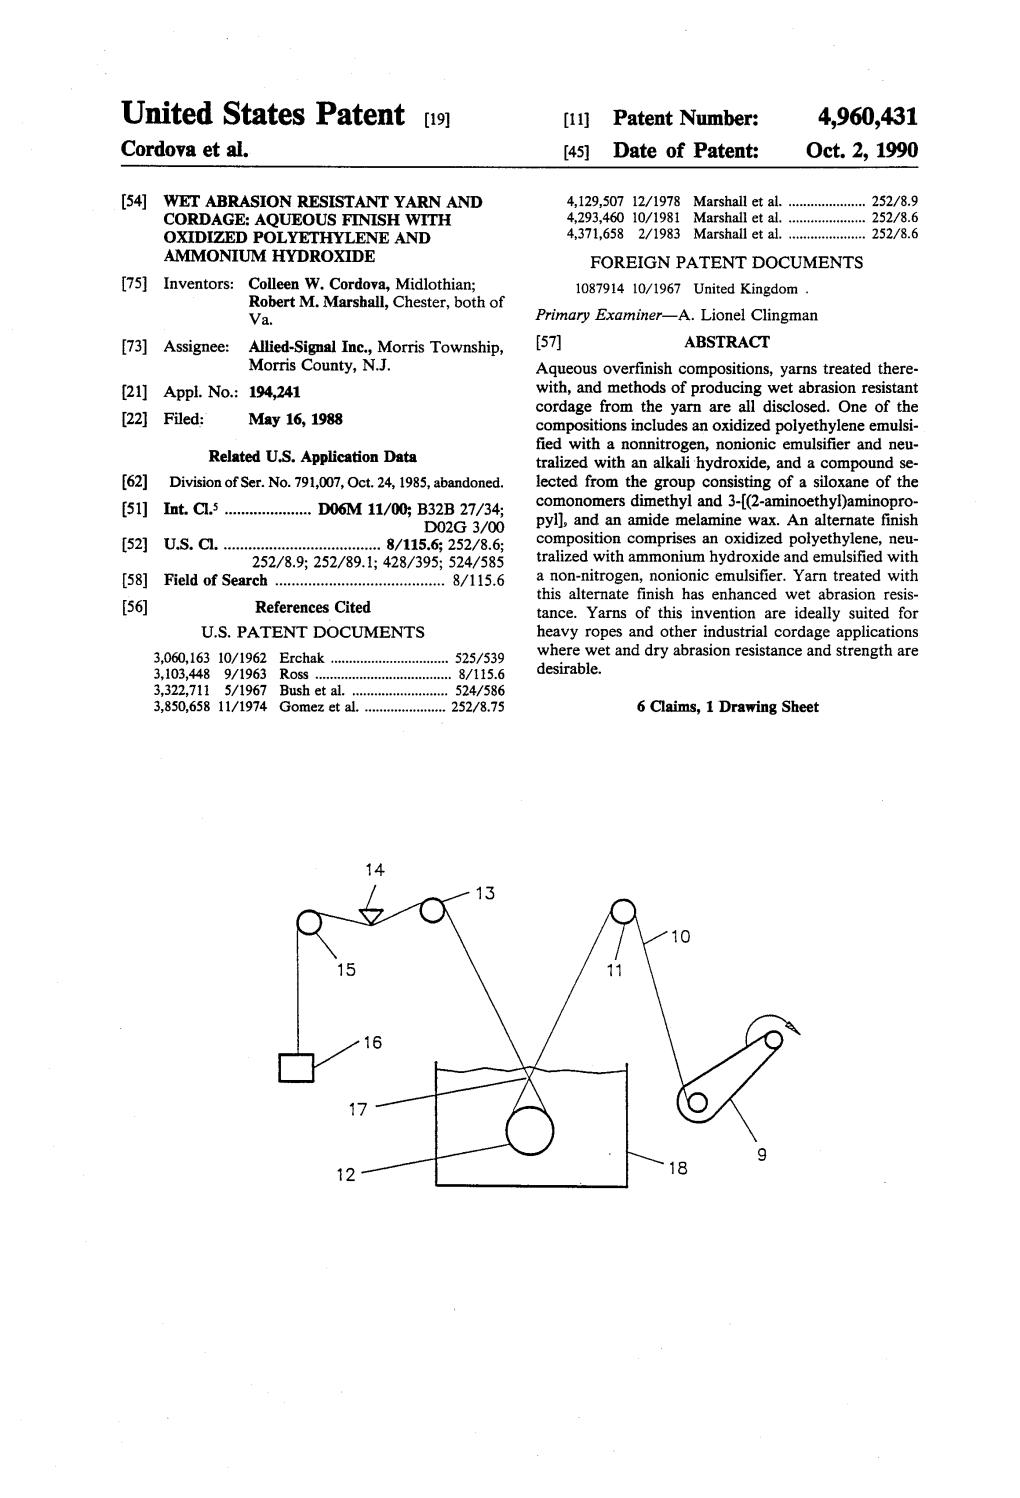 United States Patent 19 11 Patent Number: 4,960,431 Cordova Et Al